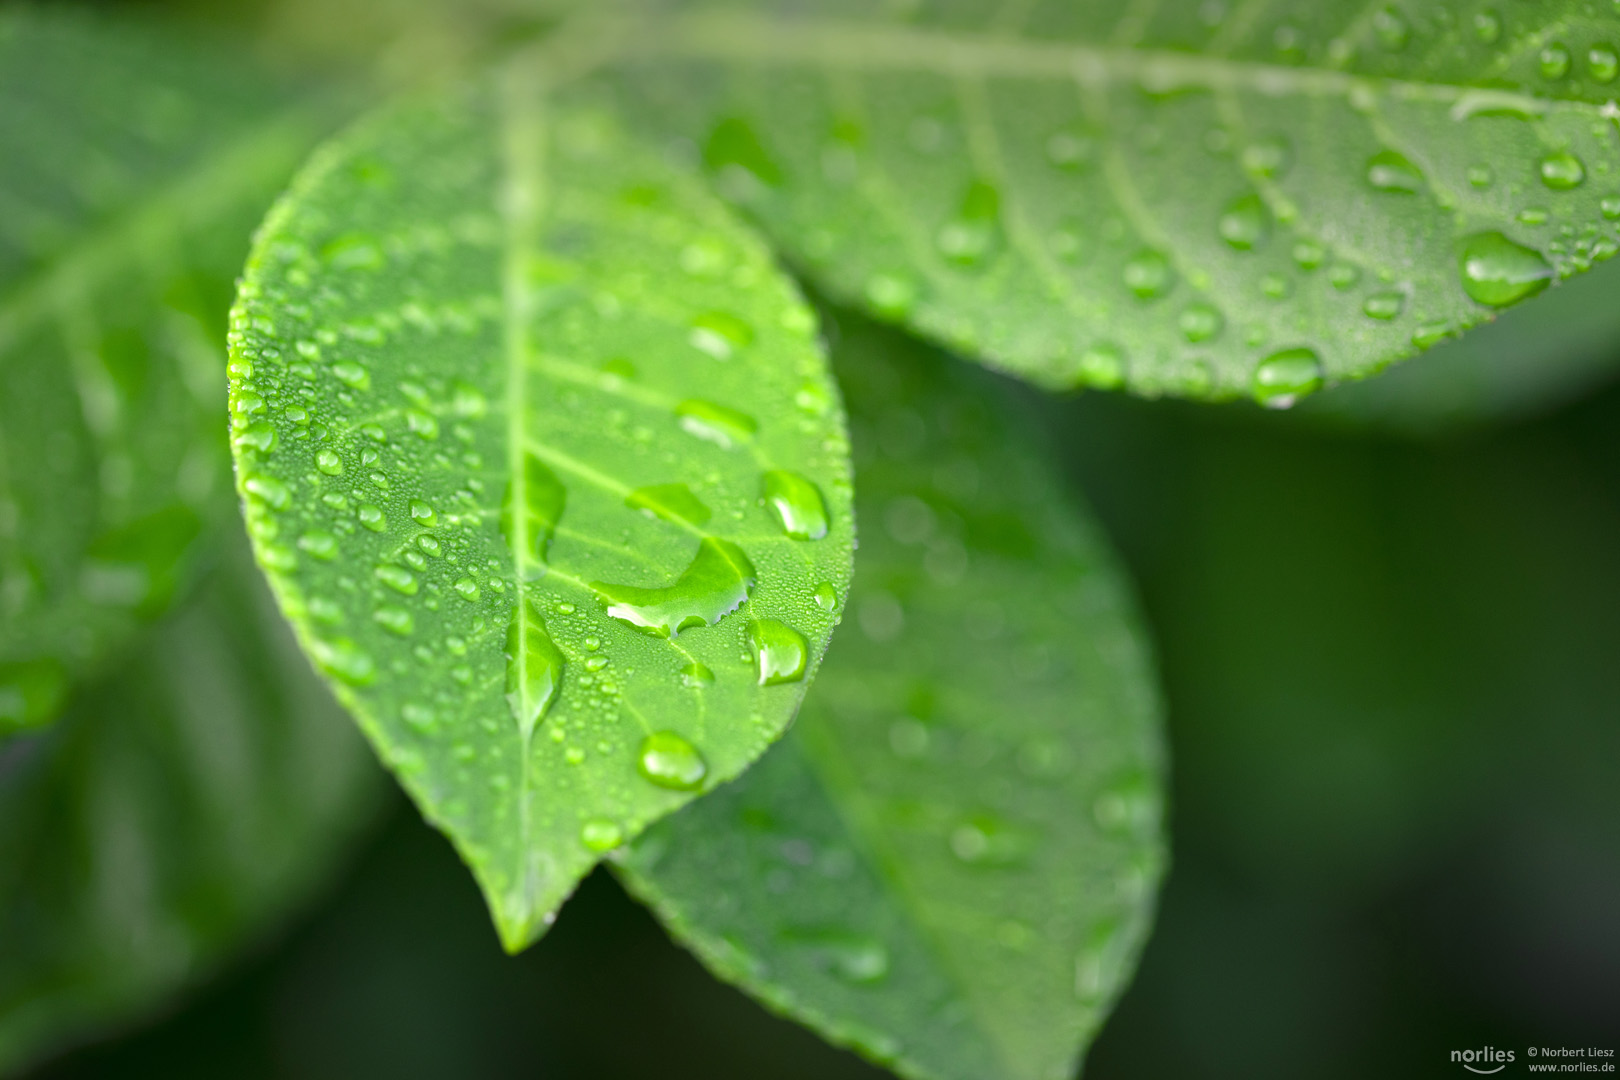 Regentropfen auf grünem Blatt